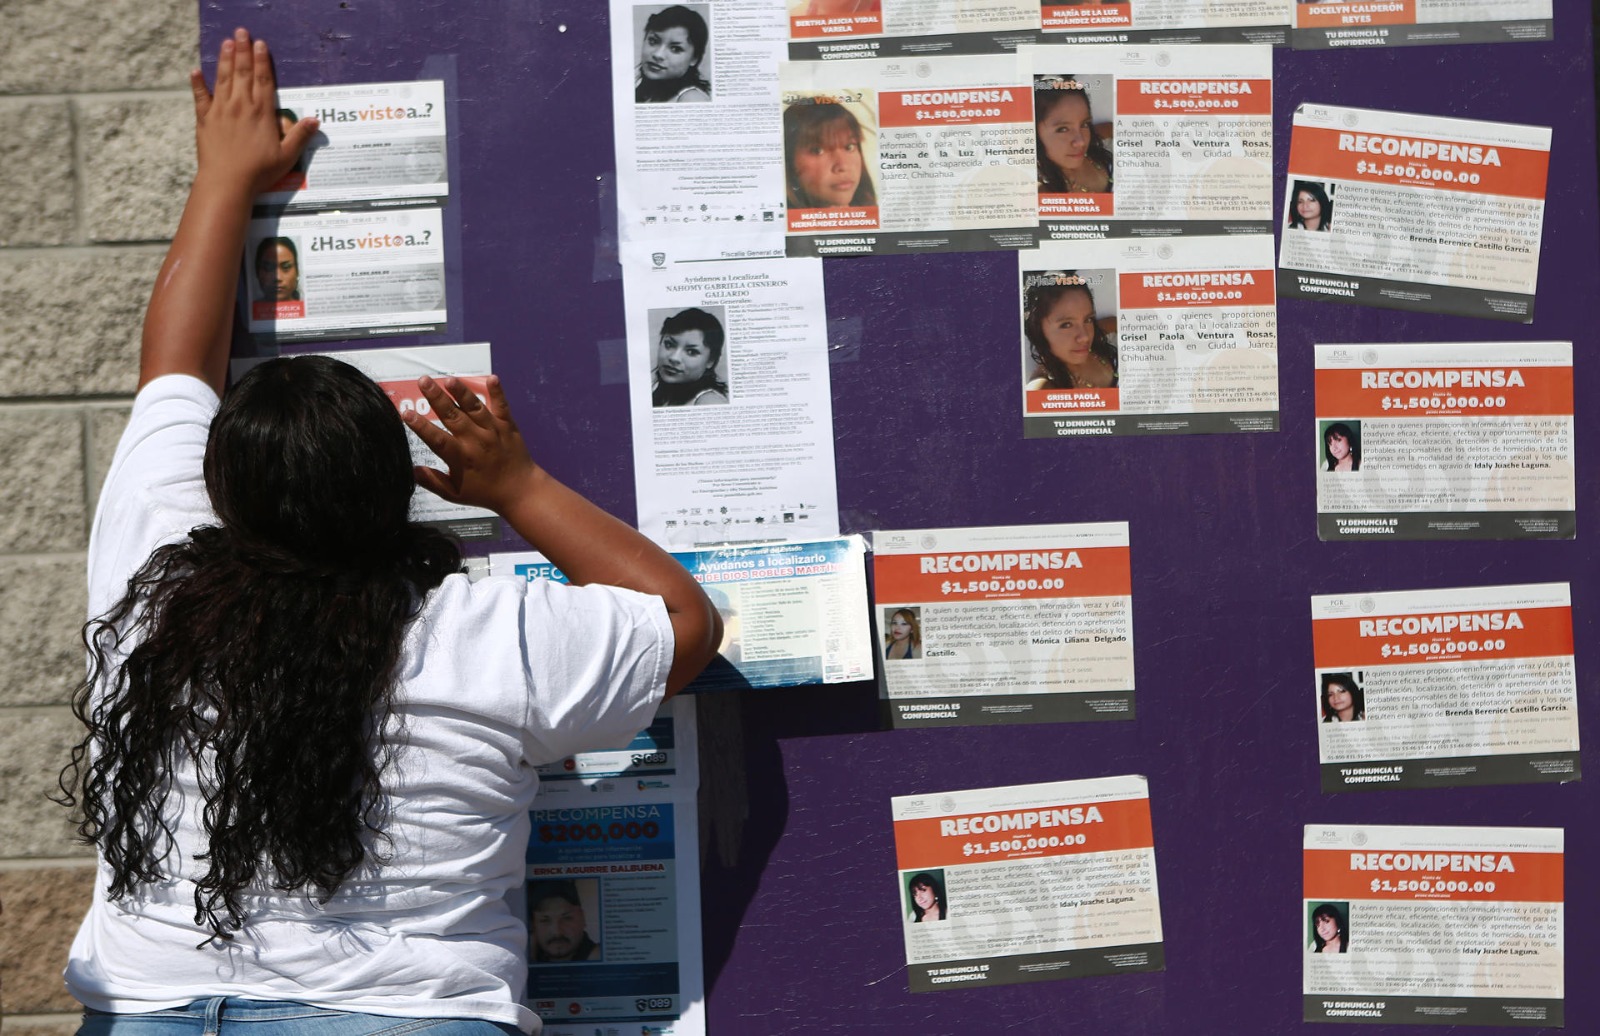 Migrantes denunciaron este 30 de agosto que se han multiplicado las desapariciones de sus compañeros en la frontera norte de México, donde se pierden grupos completos de hasta 30 personas, por lo que protestaron este Día Internacional de las Víctimas de Desapariciones Forzadas. (Foto Prensa Libre: EFE)